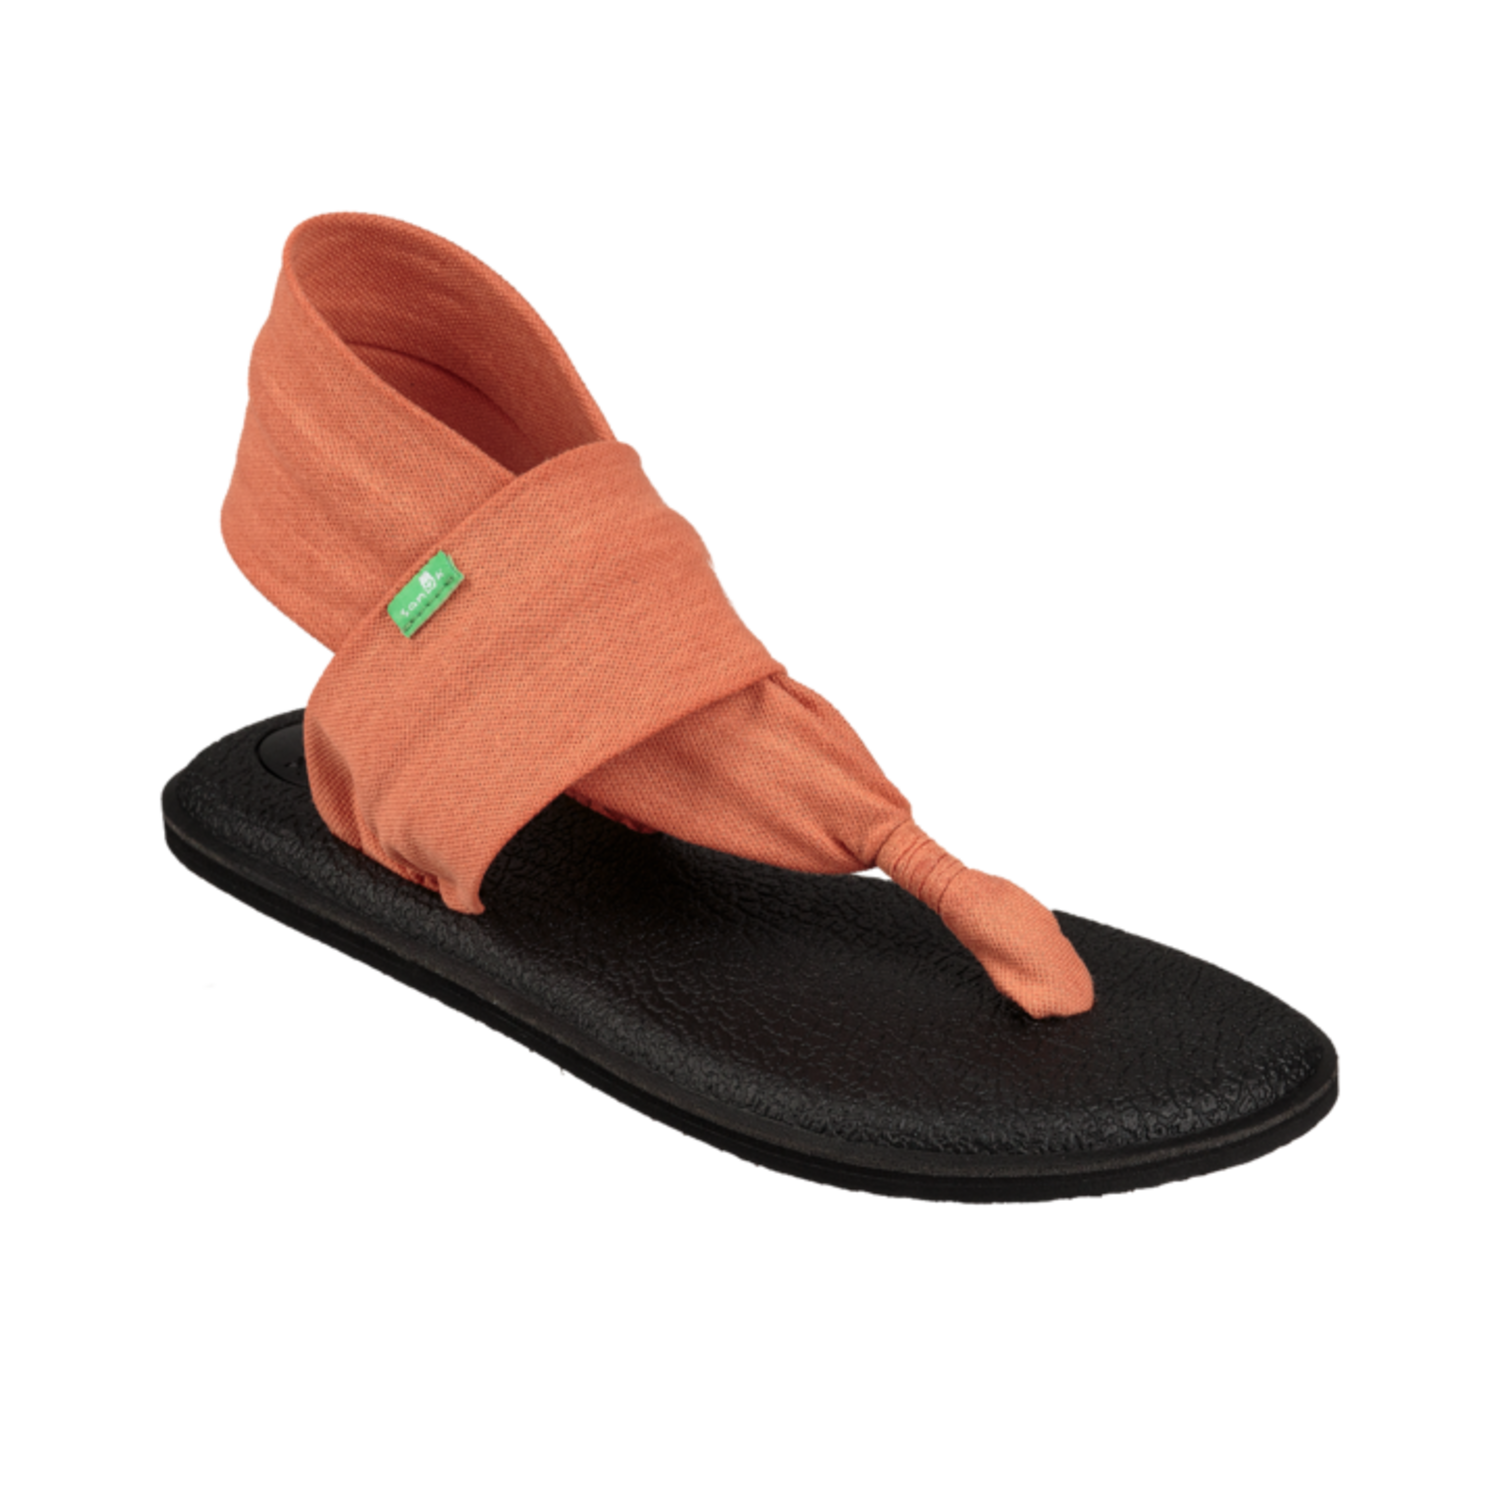 Footwear : Sanuk Sale Canada Flip Flops Unisex, Buy your Sanuk